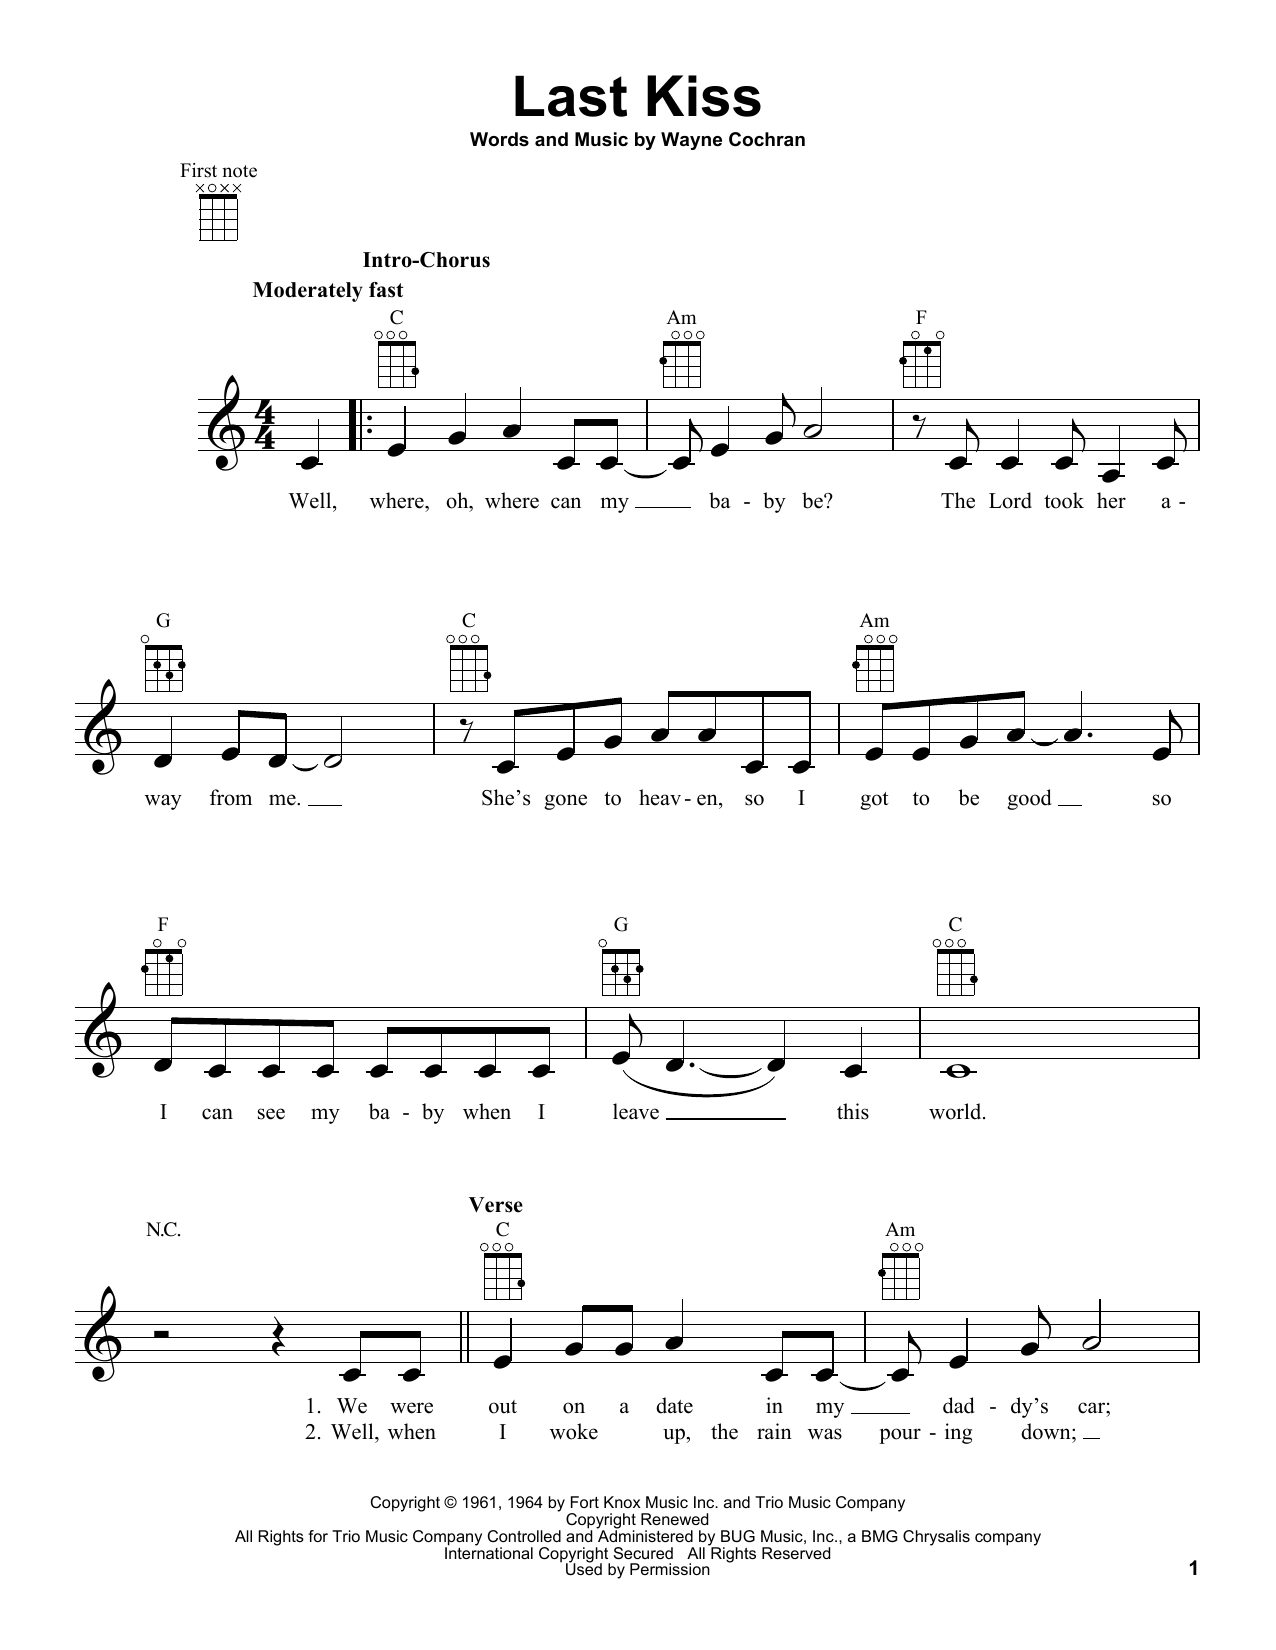 Wayne Cochran Last Kiss Sheet Music Notes & Chords for Real Book – Melody, Lyrics & Chords - Download or Print PDF